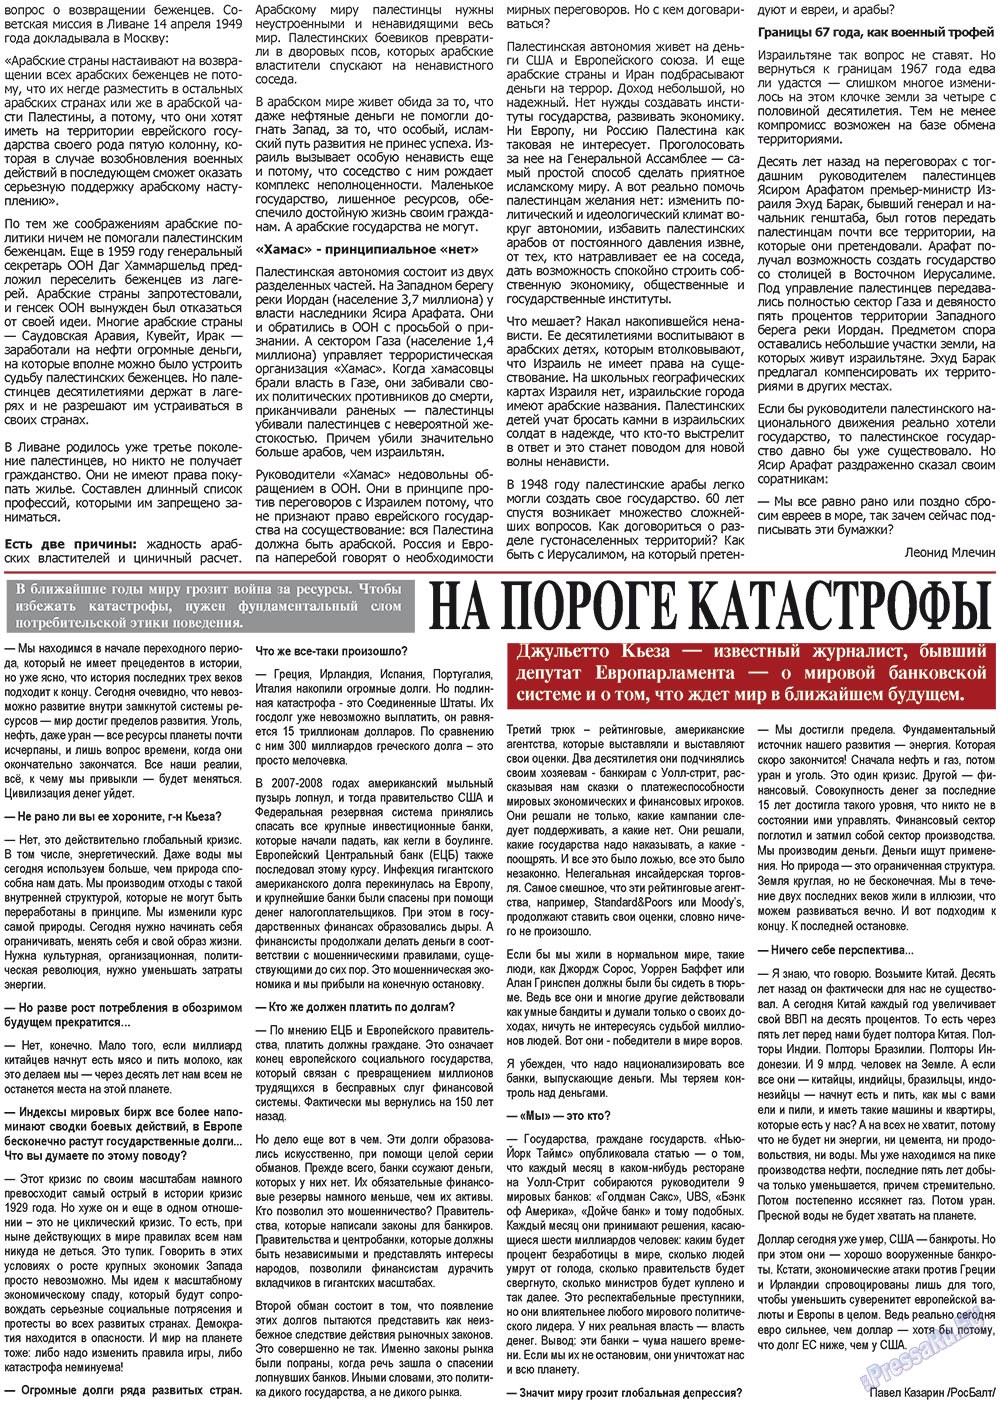 Все pro все (газета). 2011 год, номер 6, стр. 3